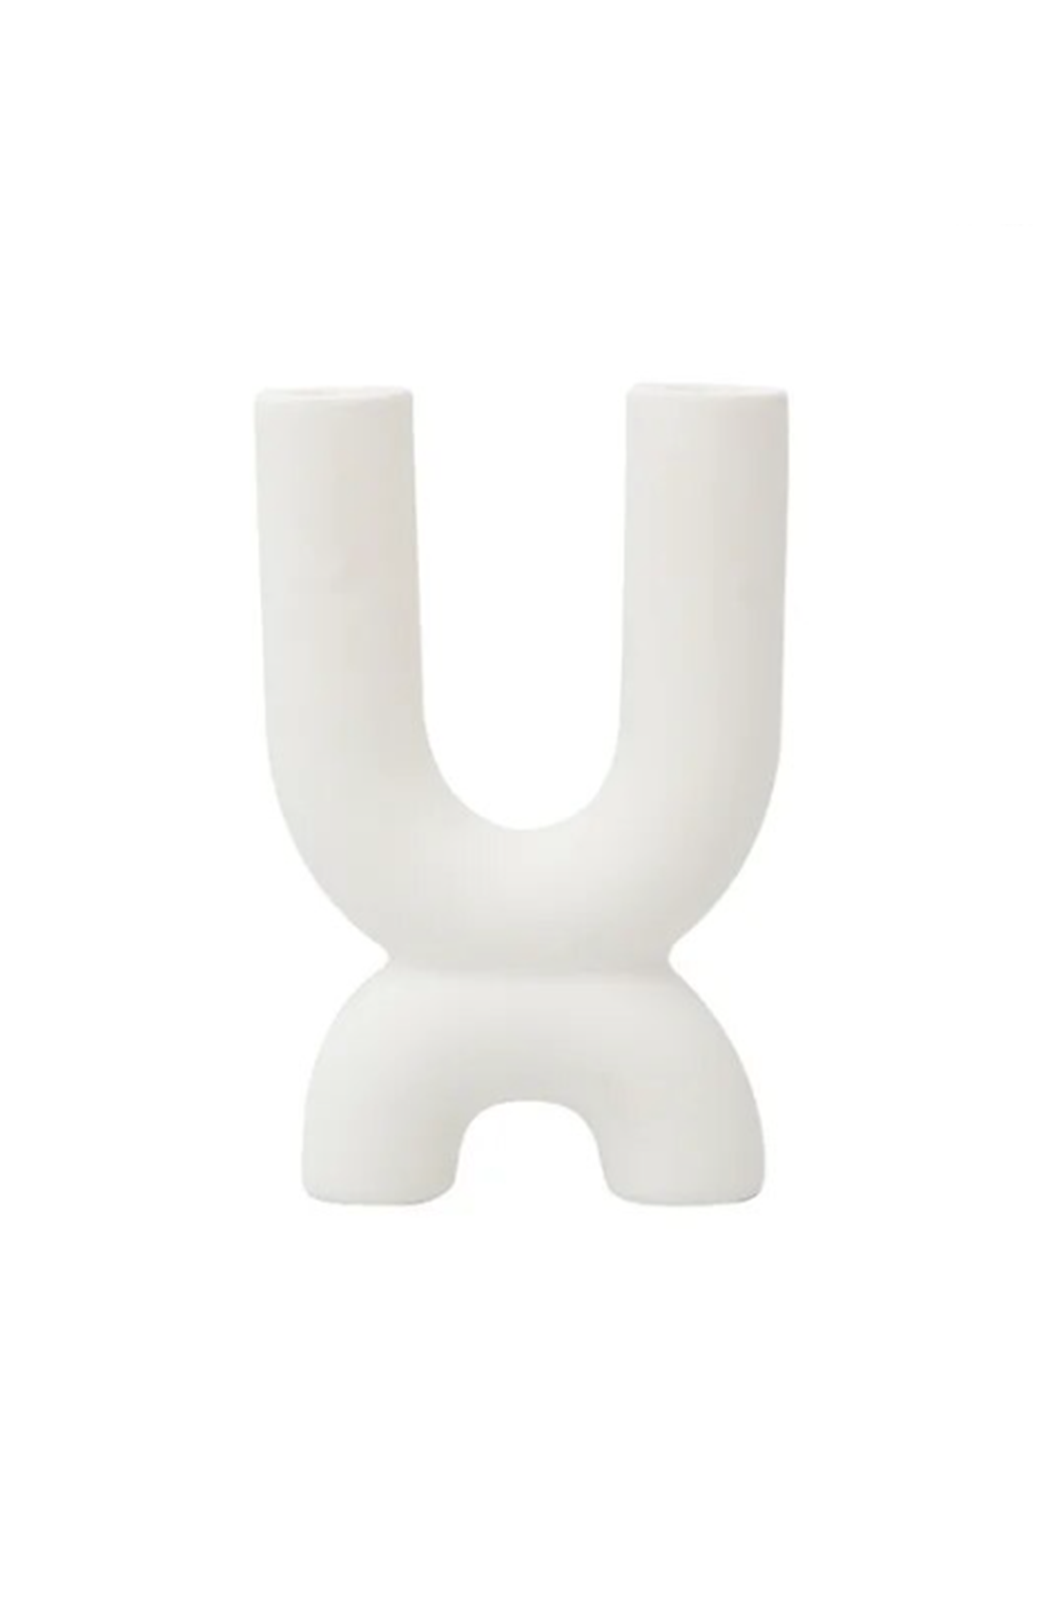 White ceramic candlestick holder